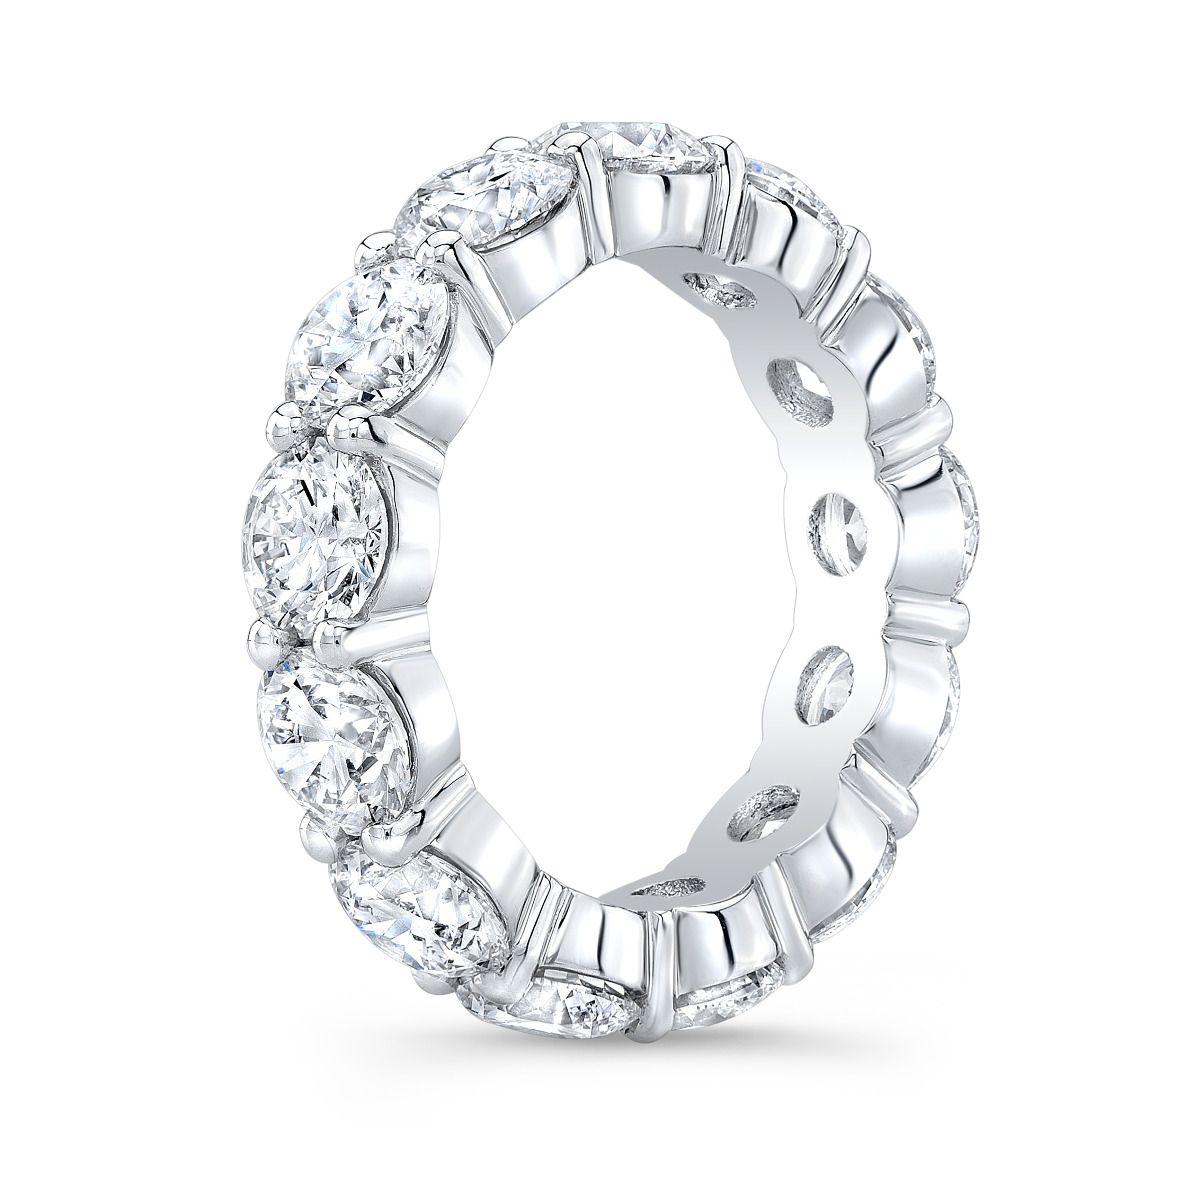 Bracelet éternel en diamant serti d'un poids total impressionnant de 7,15 carats de diamants ronds, chacun méticuleusement certifié par le Gemological Institute of America (GIA). Fabriqué avec une précision exquise, ce superbe bracelet d'éternité